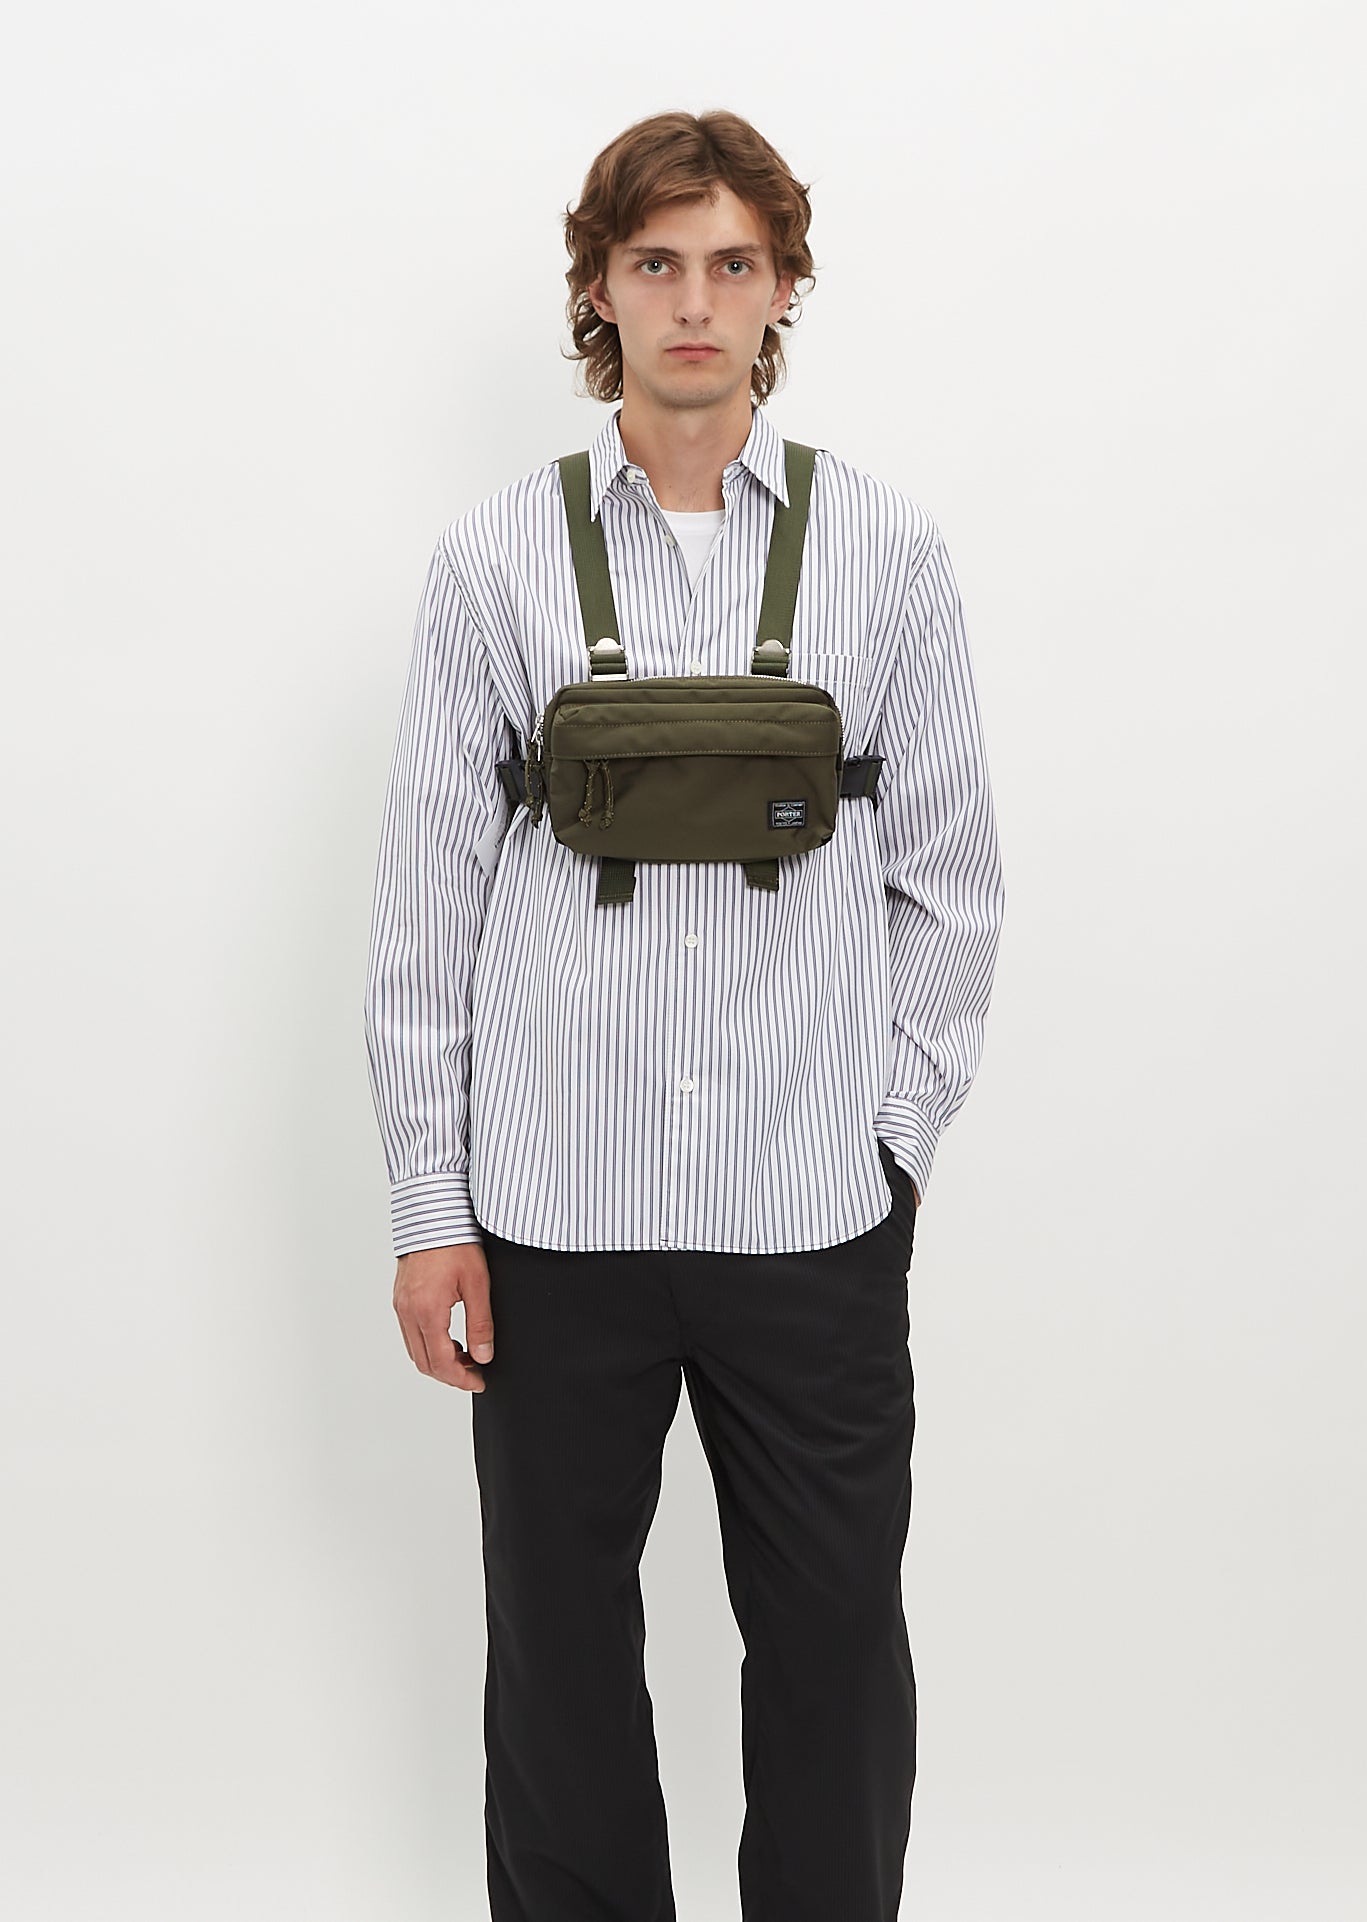 Porter Front Shoulder bag (L)